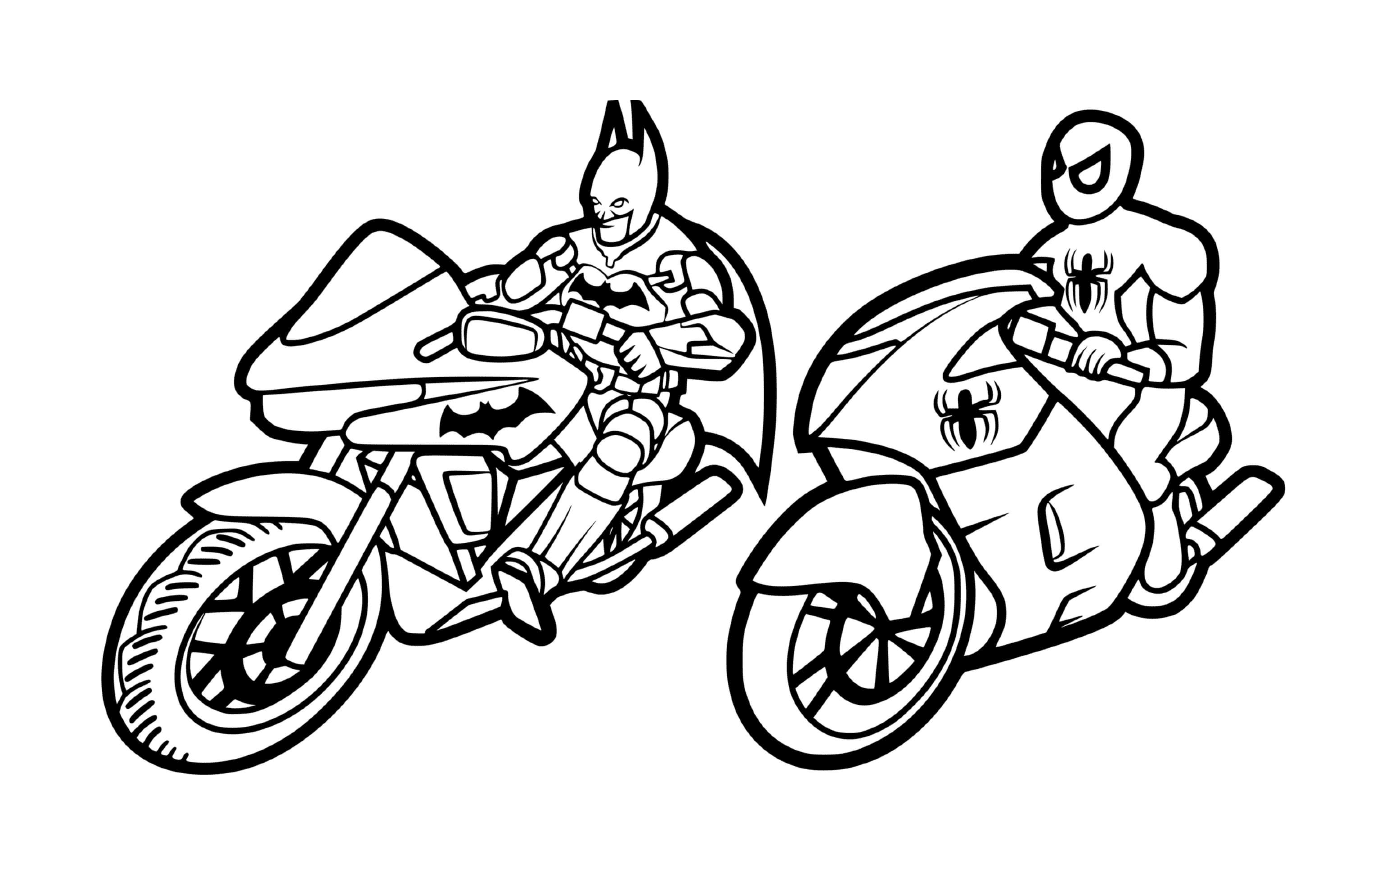  Batman y Spiderman en motocicleta 